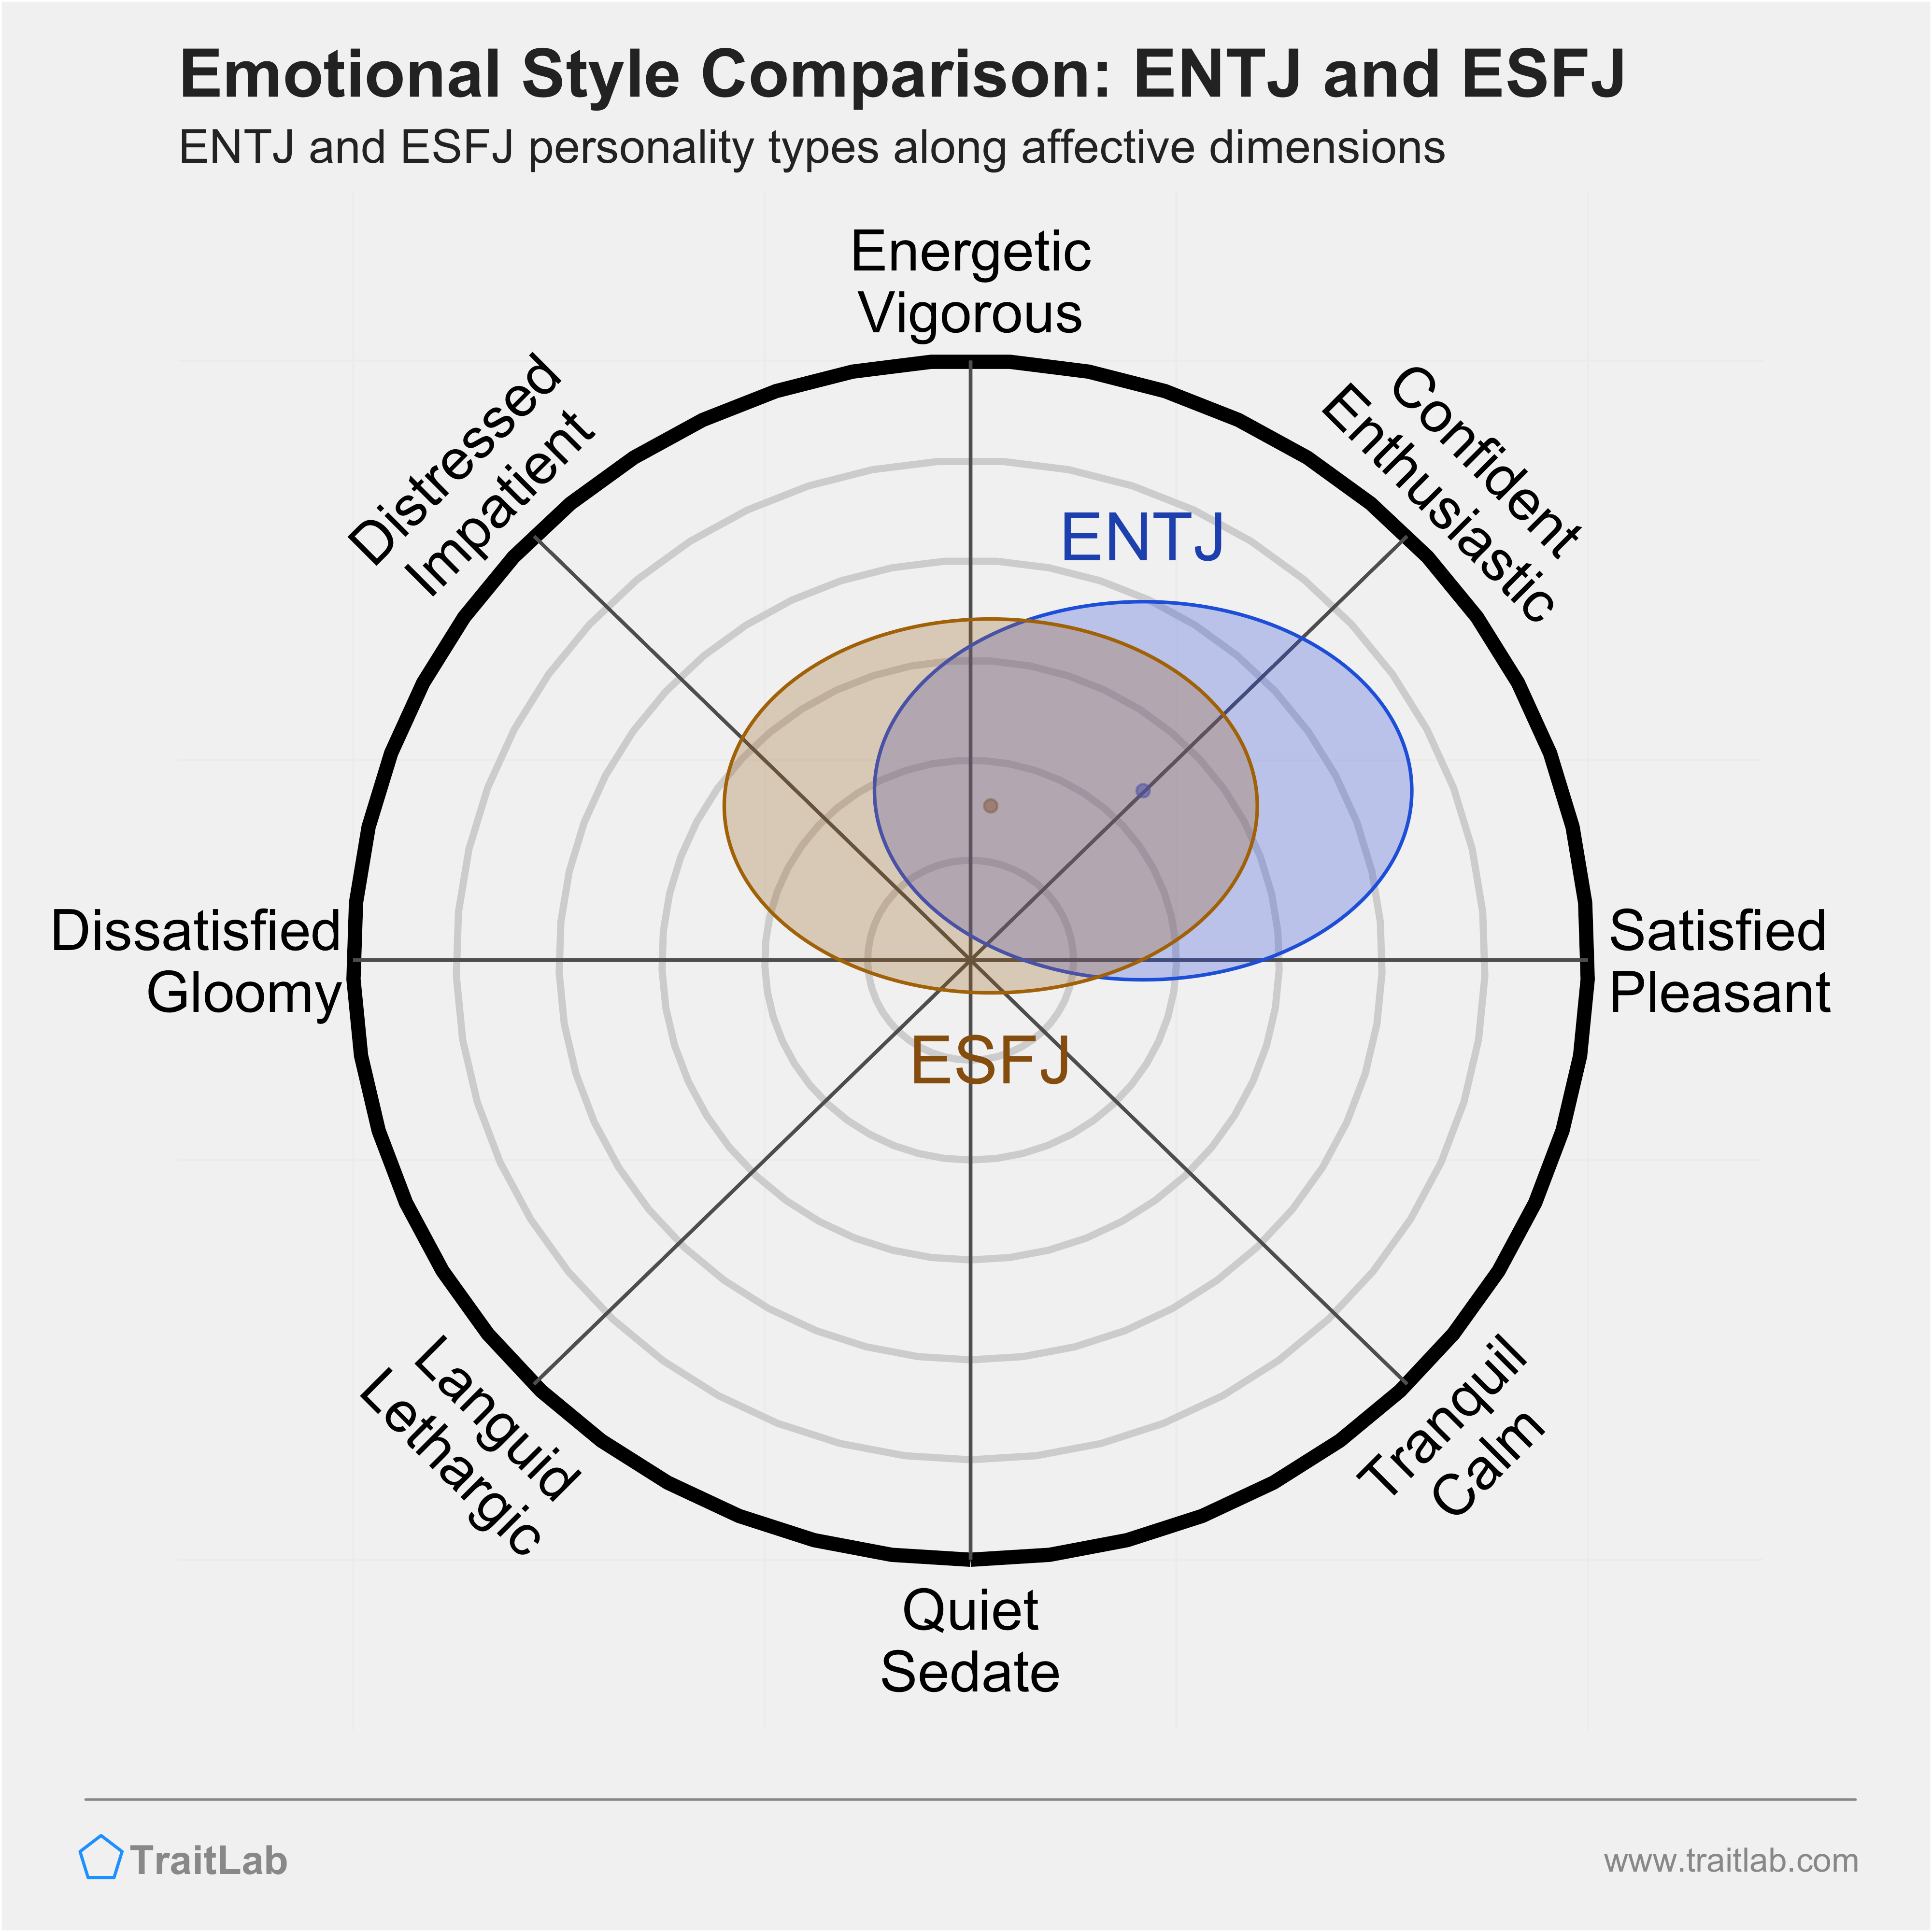 ENTJ and ESFJ comparison across emotional (affective) dimensions